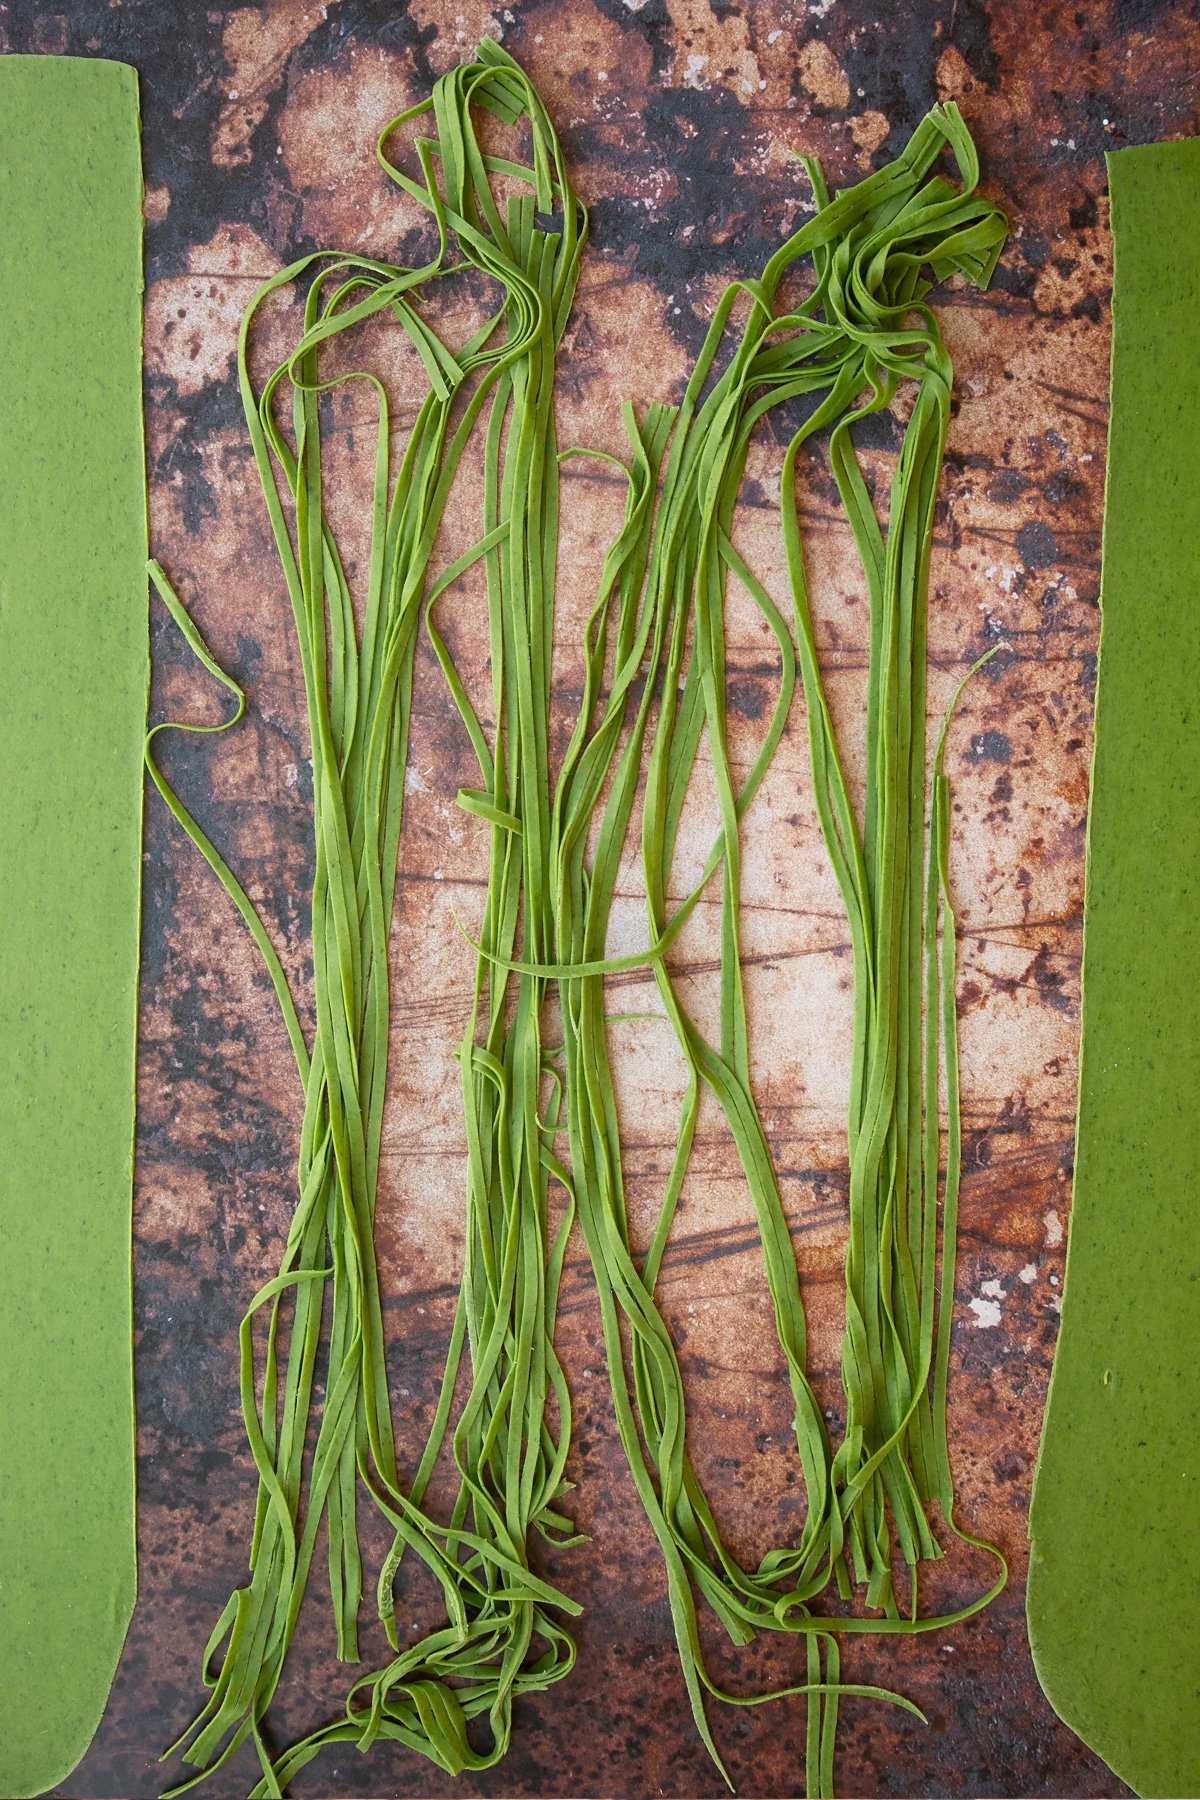 tagliatelle verdi pasta cut into thin strips on a brown background.